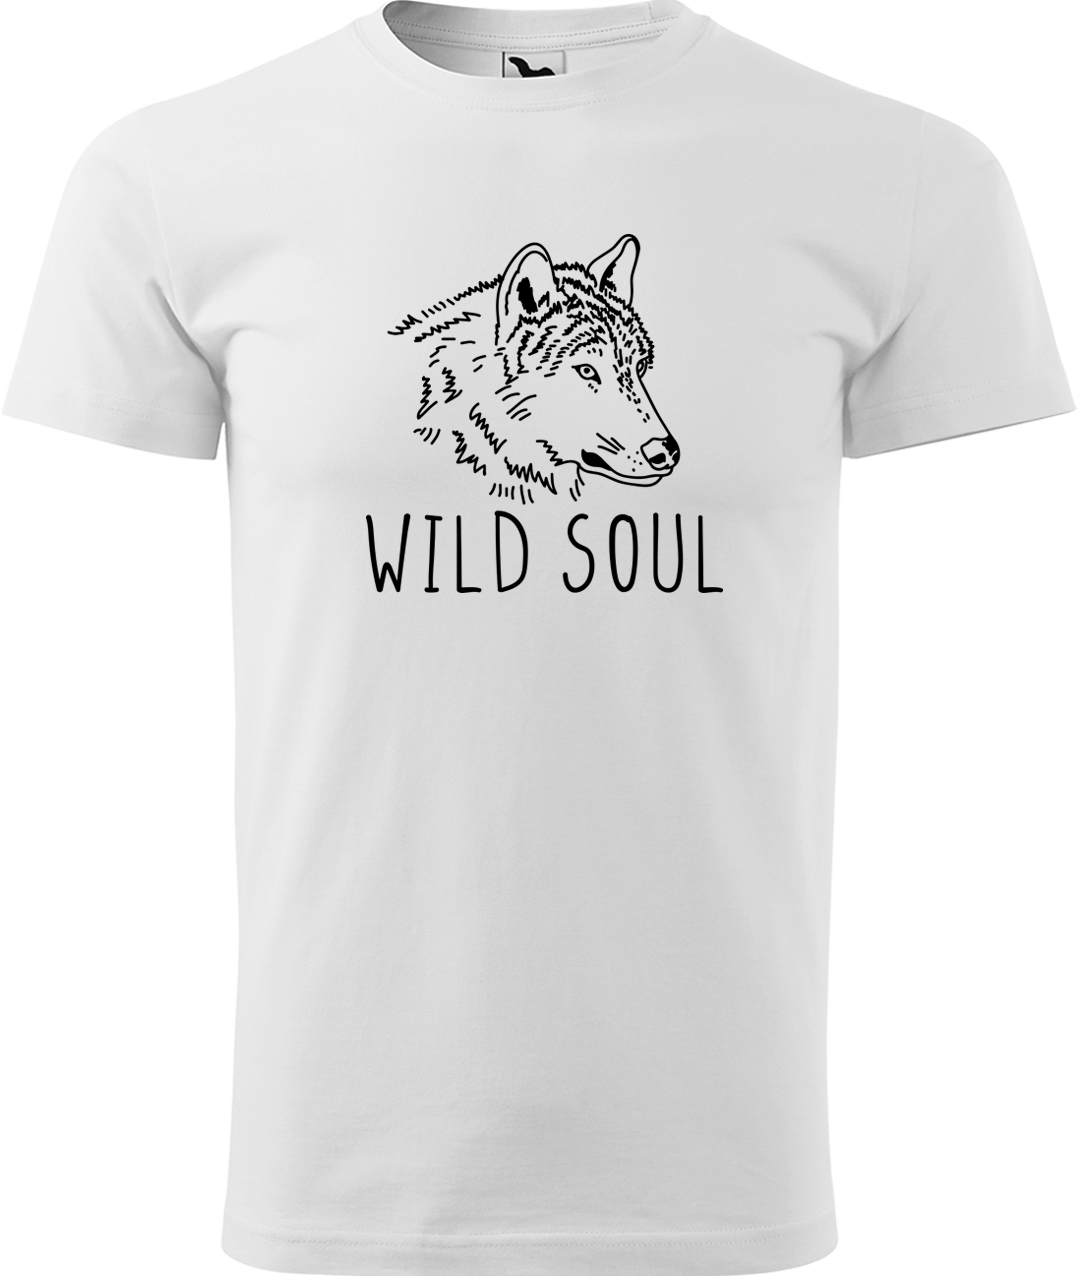 Pánské tričko s vlkem - Wild soul Velikost: 2XL, Barva: Bílá (00), Střih: pánský